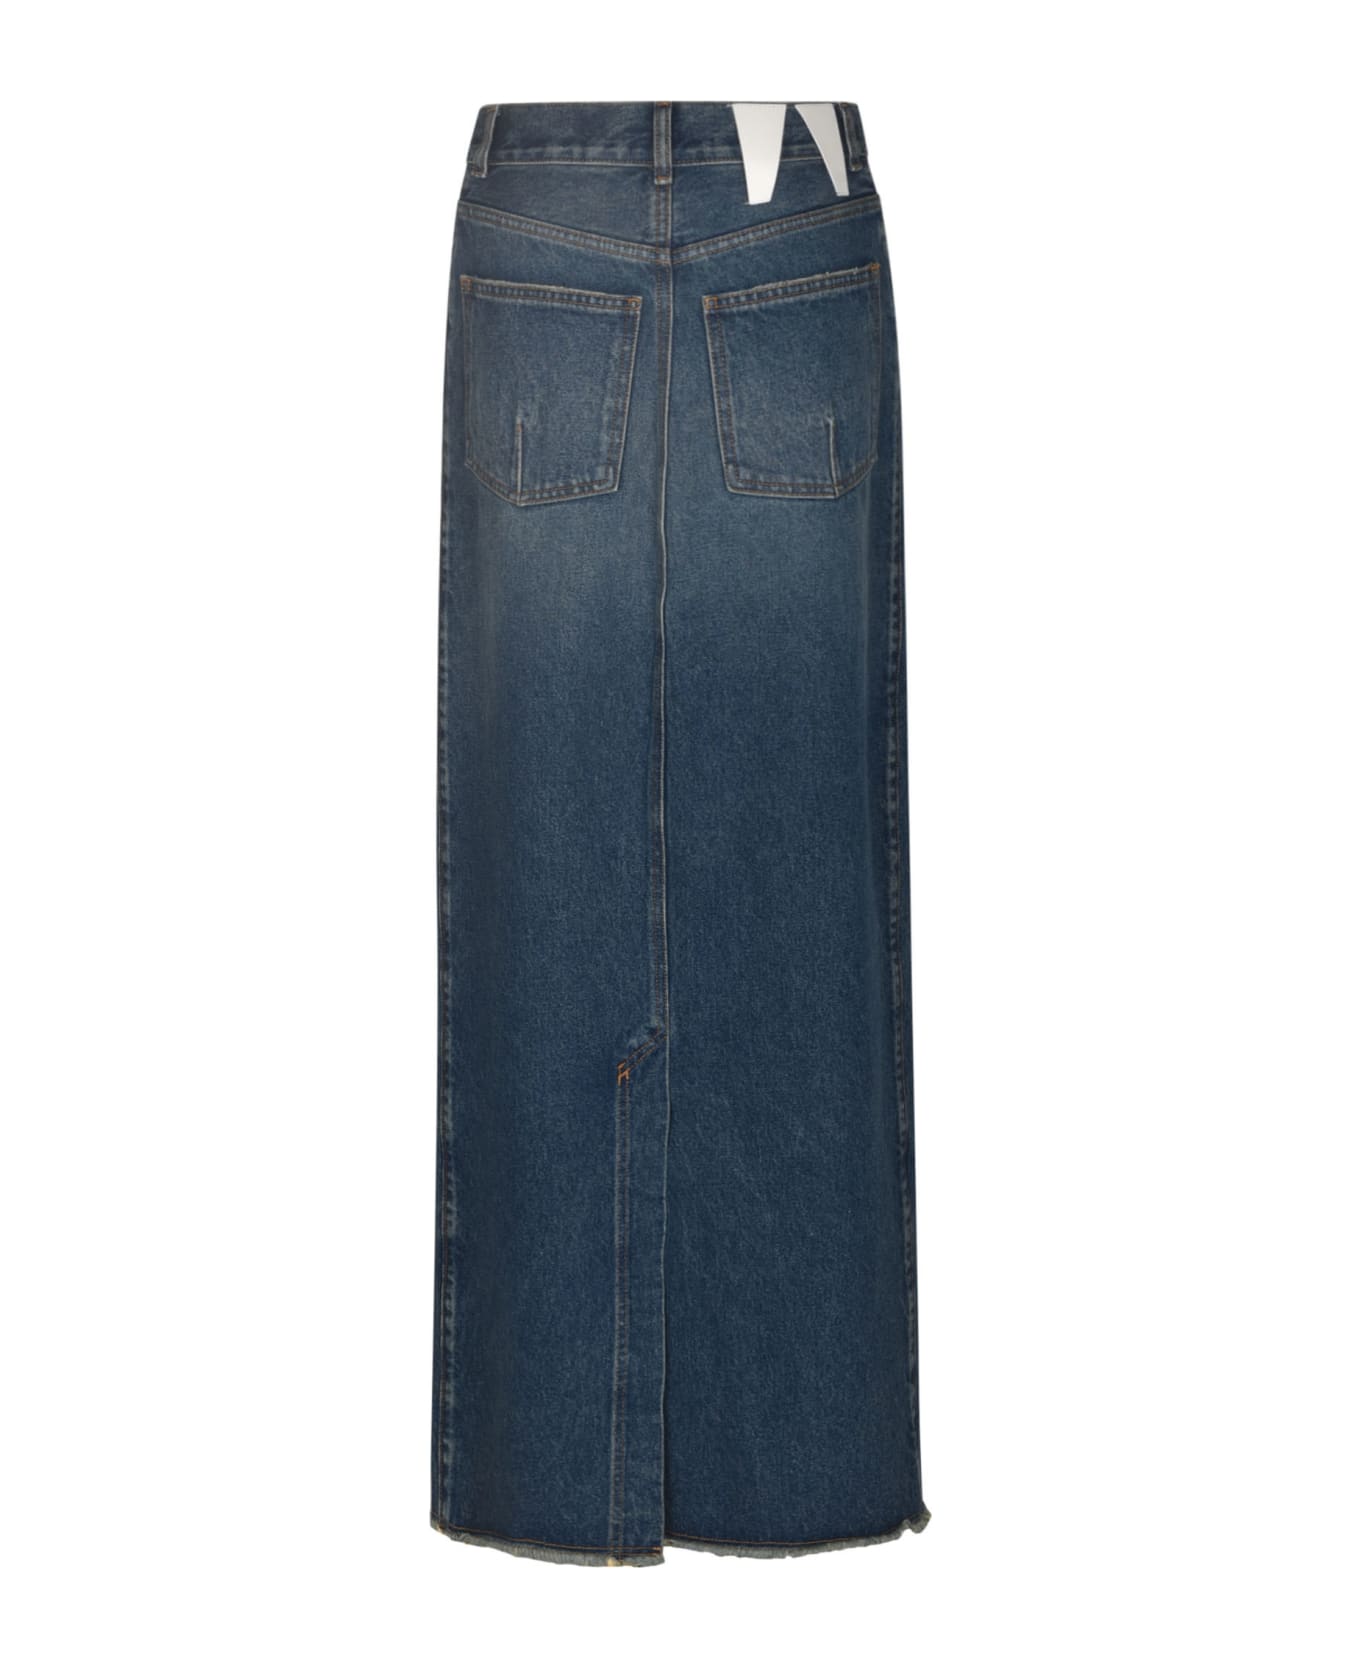 DARKPARK Emma Skirt - Medium Wash Blue スカート